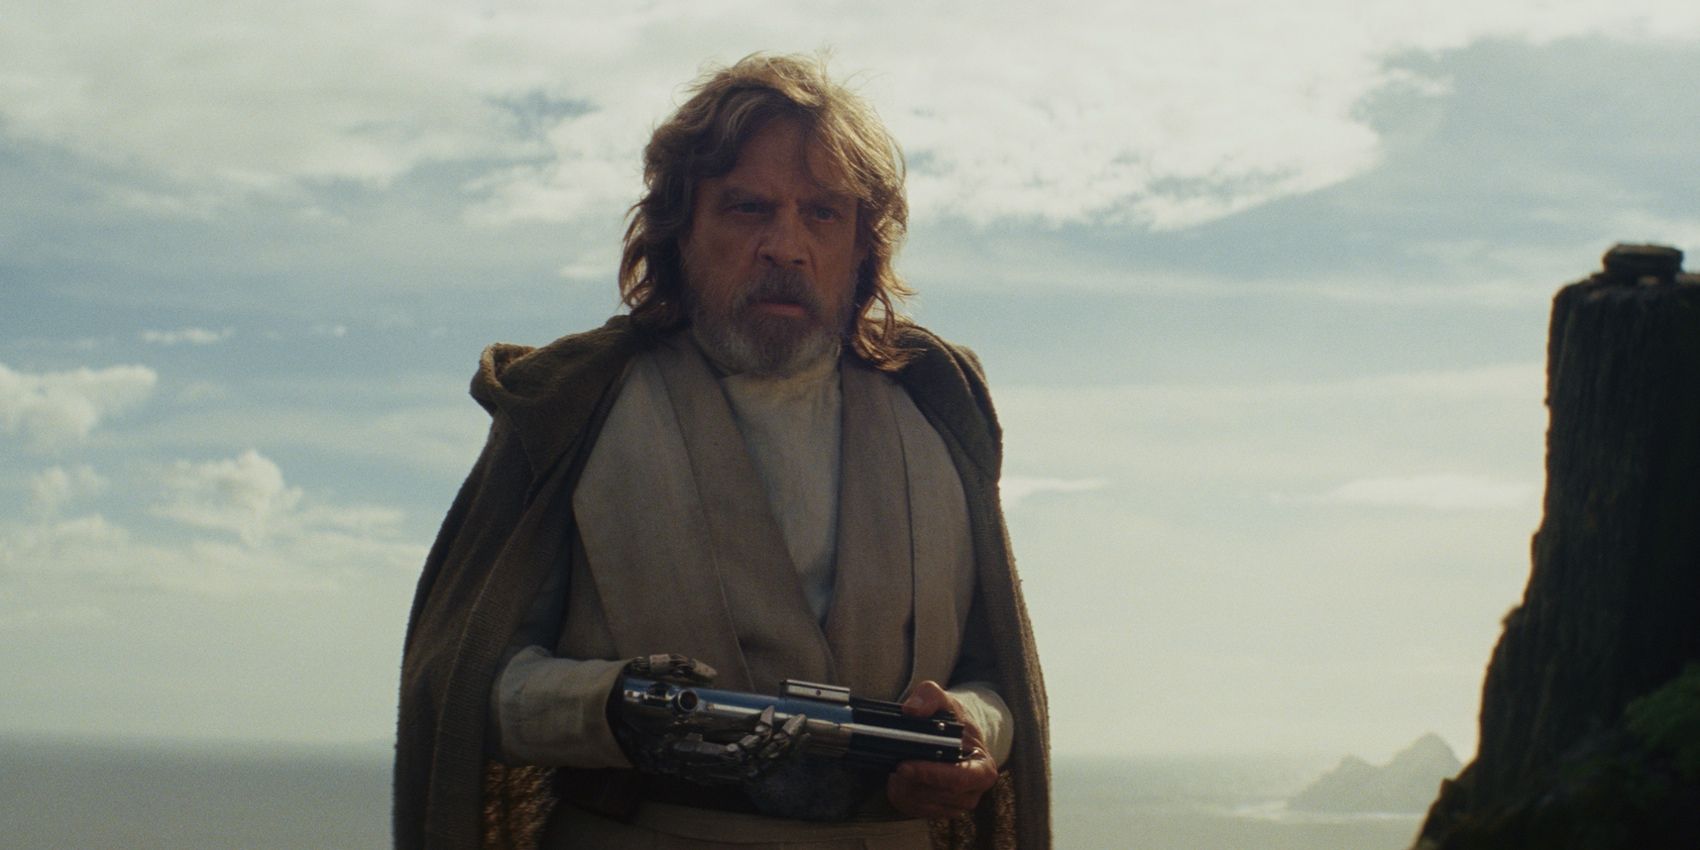 Star-Wars-Last-Jedi-Luke-Skywalker-holding-lightsaber.jpg